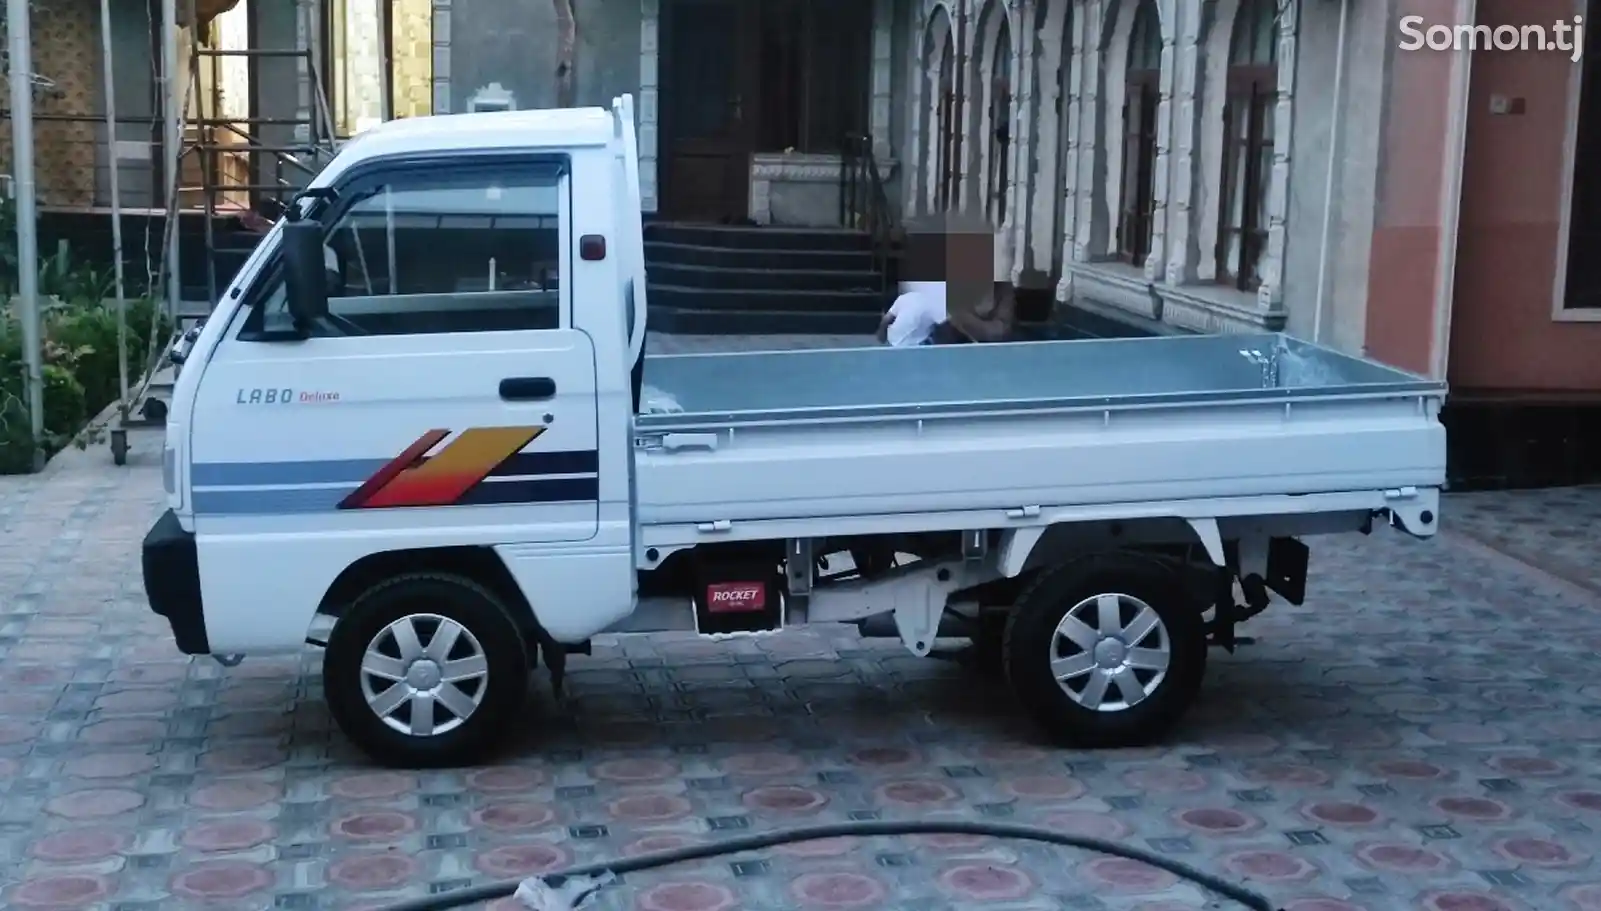 Бортовой автомобиль Daewoo Lаbo,2010-2